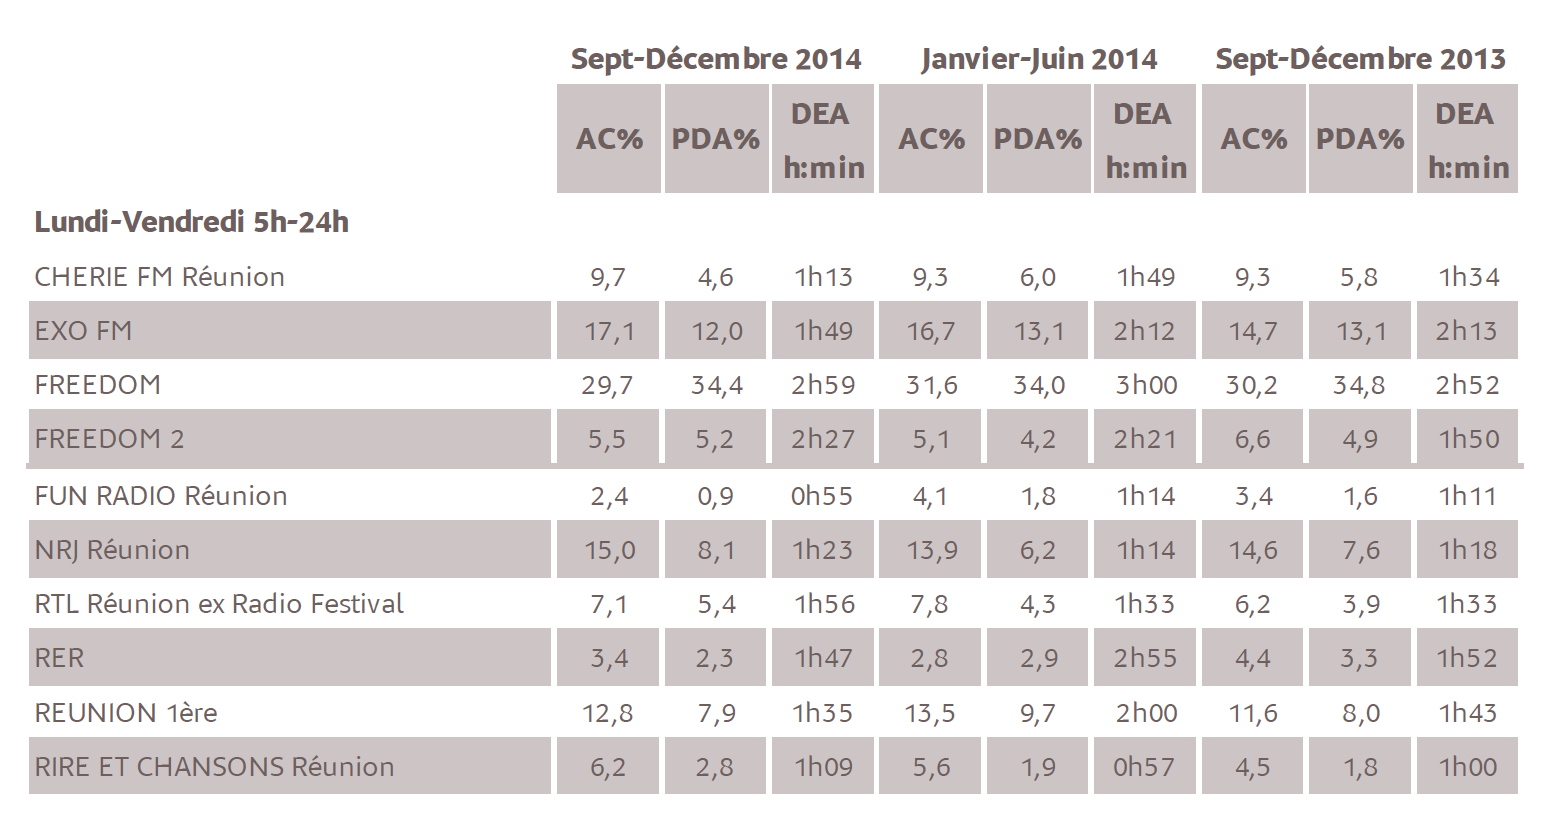 Source : Médiamétrie - Métridom Réunion Septembre-Décembre 2014 - 13 ans et plus - Copyright Médiamétrie - Tous droits réservés